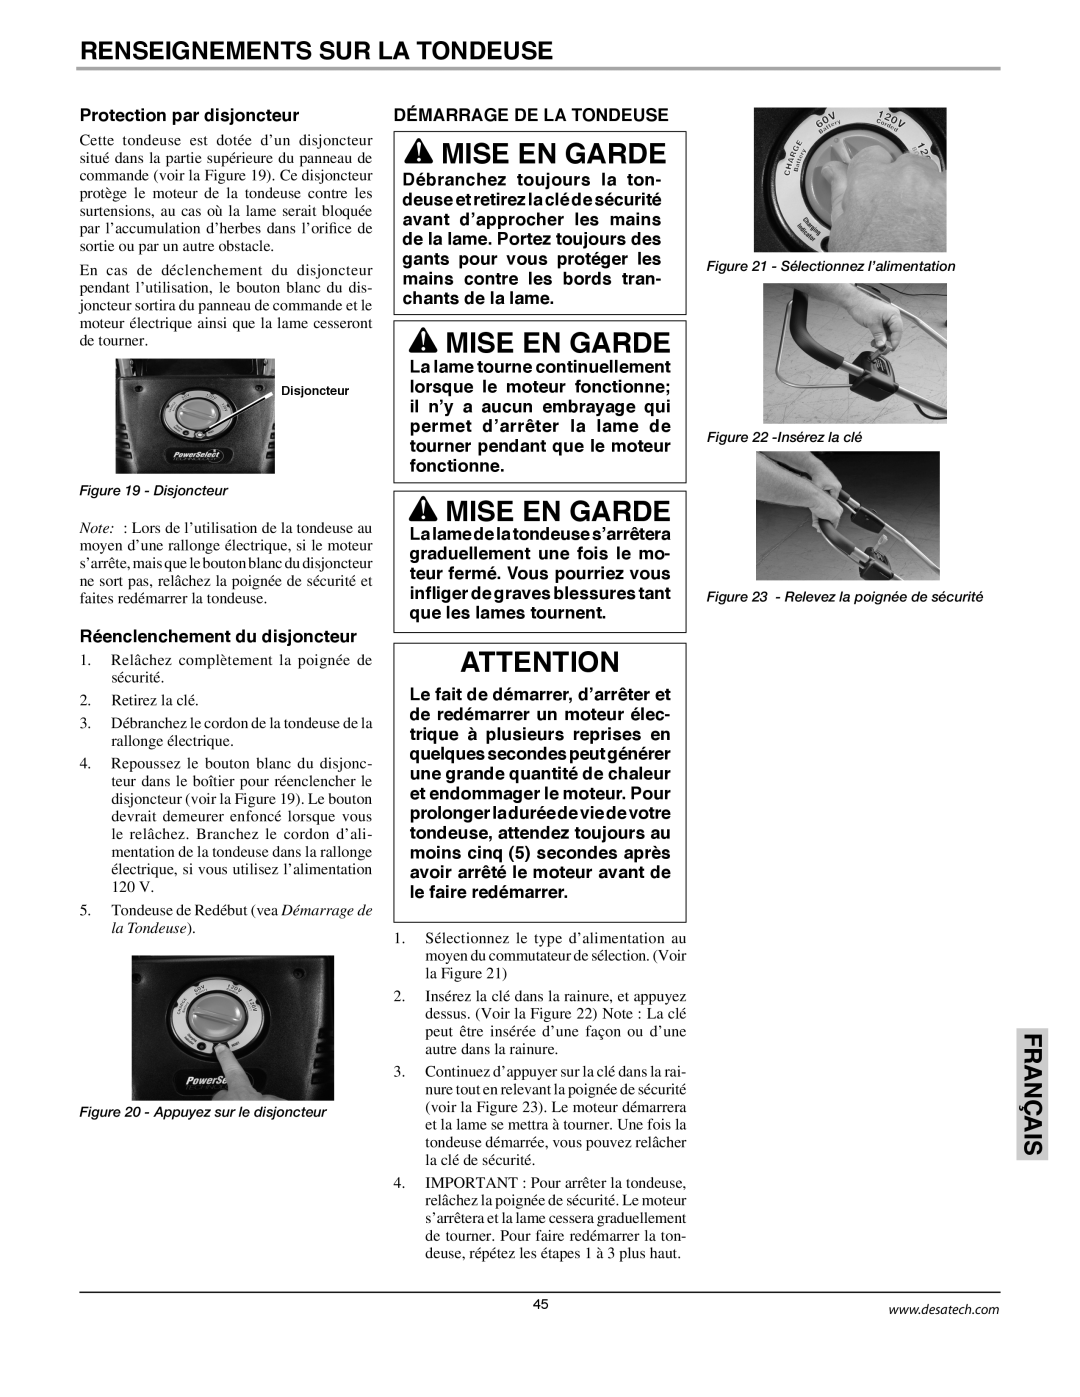 Remington Power Tools MPS6017A manual Mise En Garde, Renseignements Sur La Tondeuse, Français, Protection par disjoncteur 